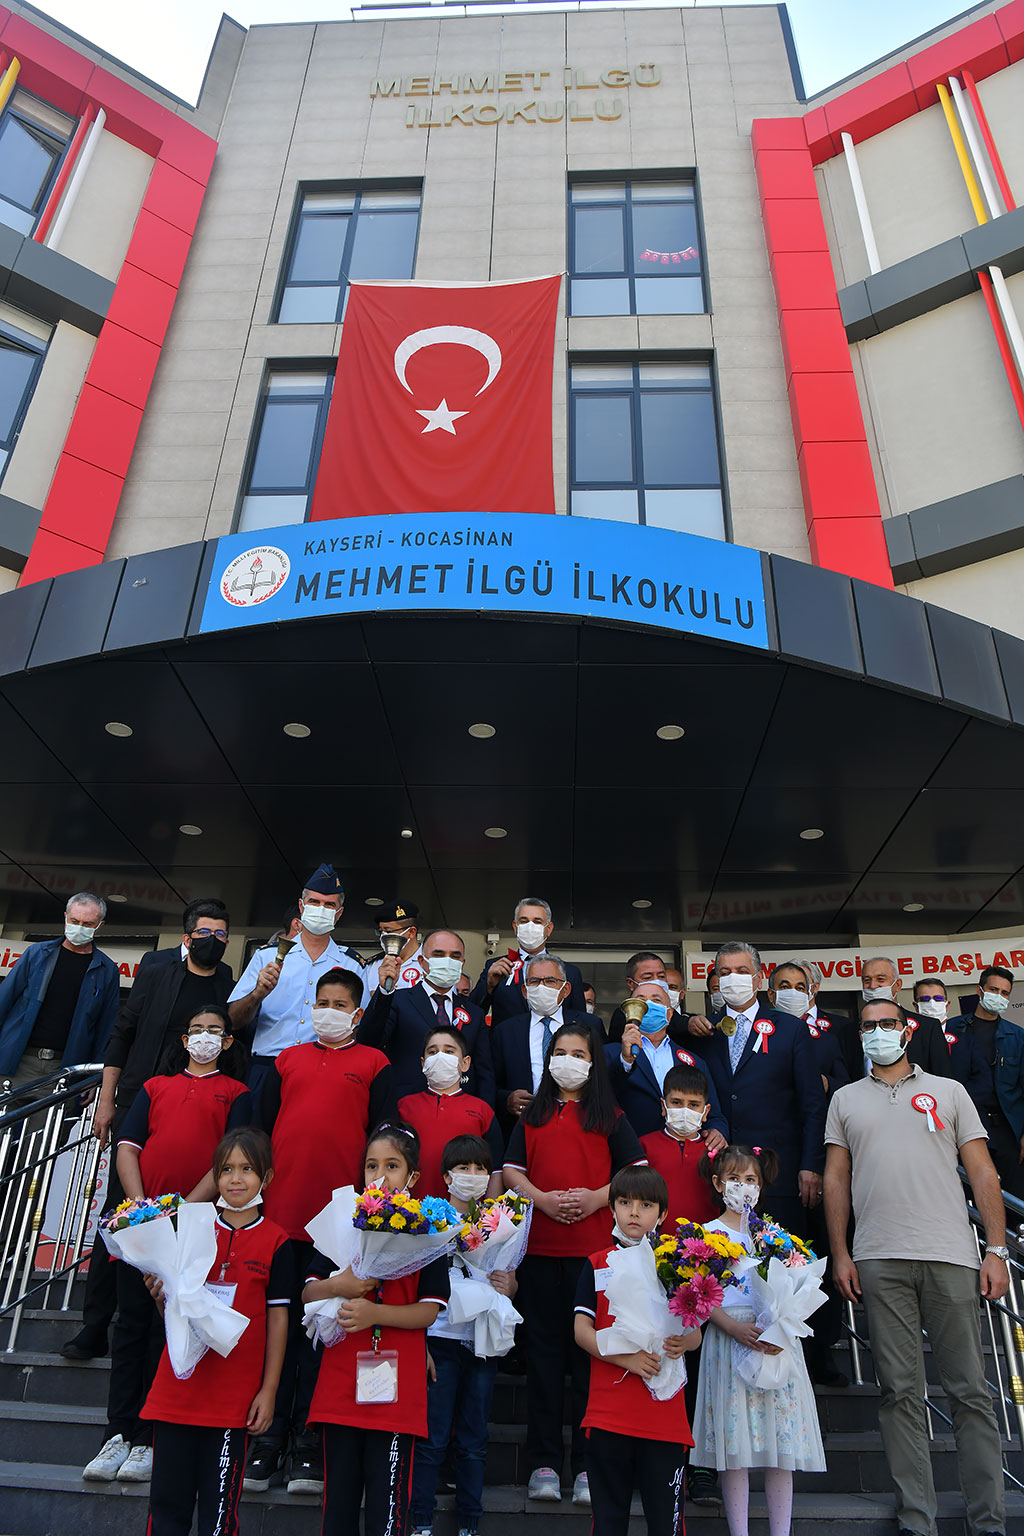 13.09.2021 - Mehmet İlgü İ.Ö.Okulu Yeni Öğretim Yılı Açılışı Programı